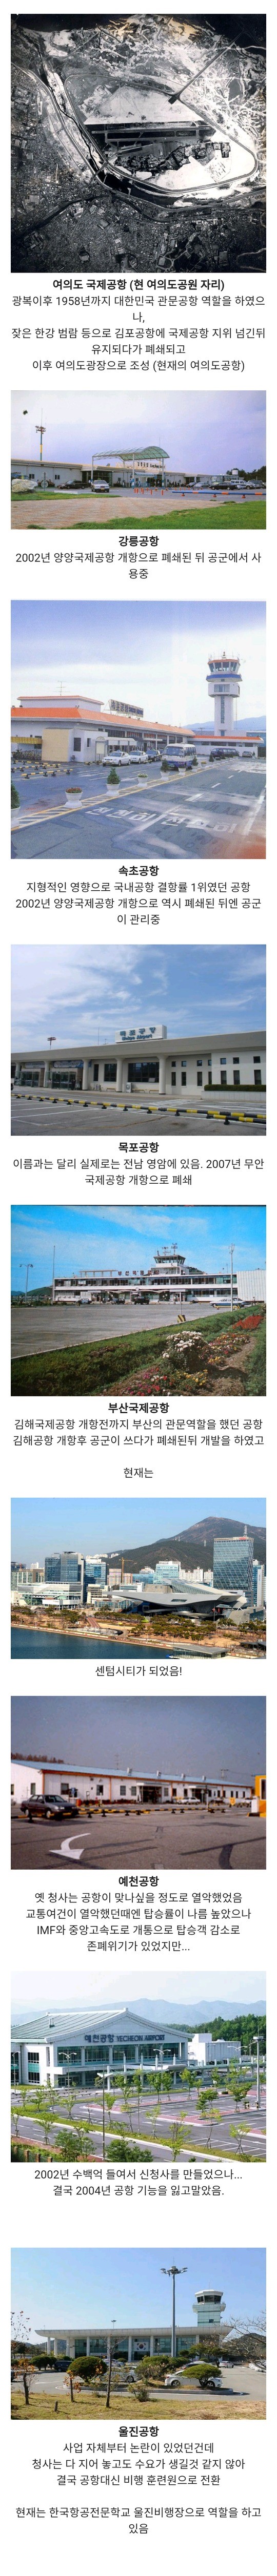 한국에 있었던 공항.jpg